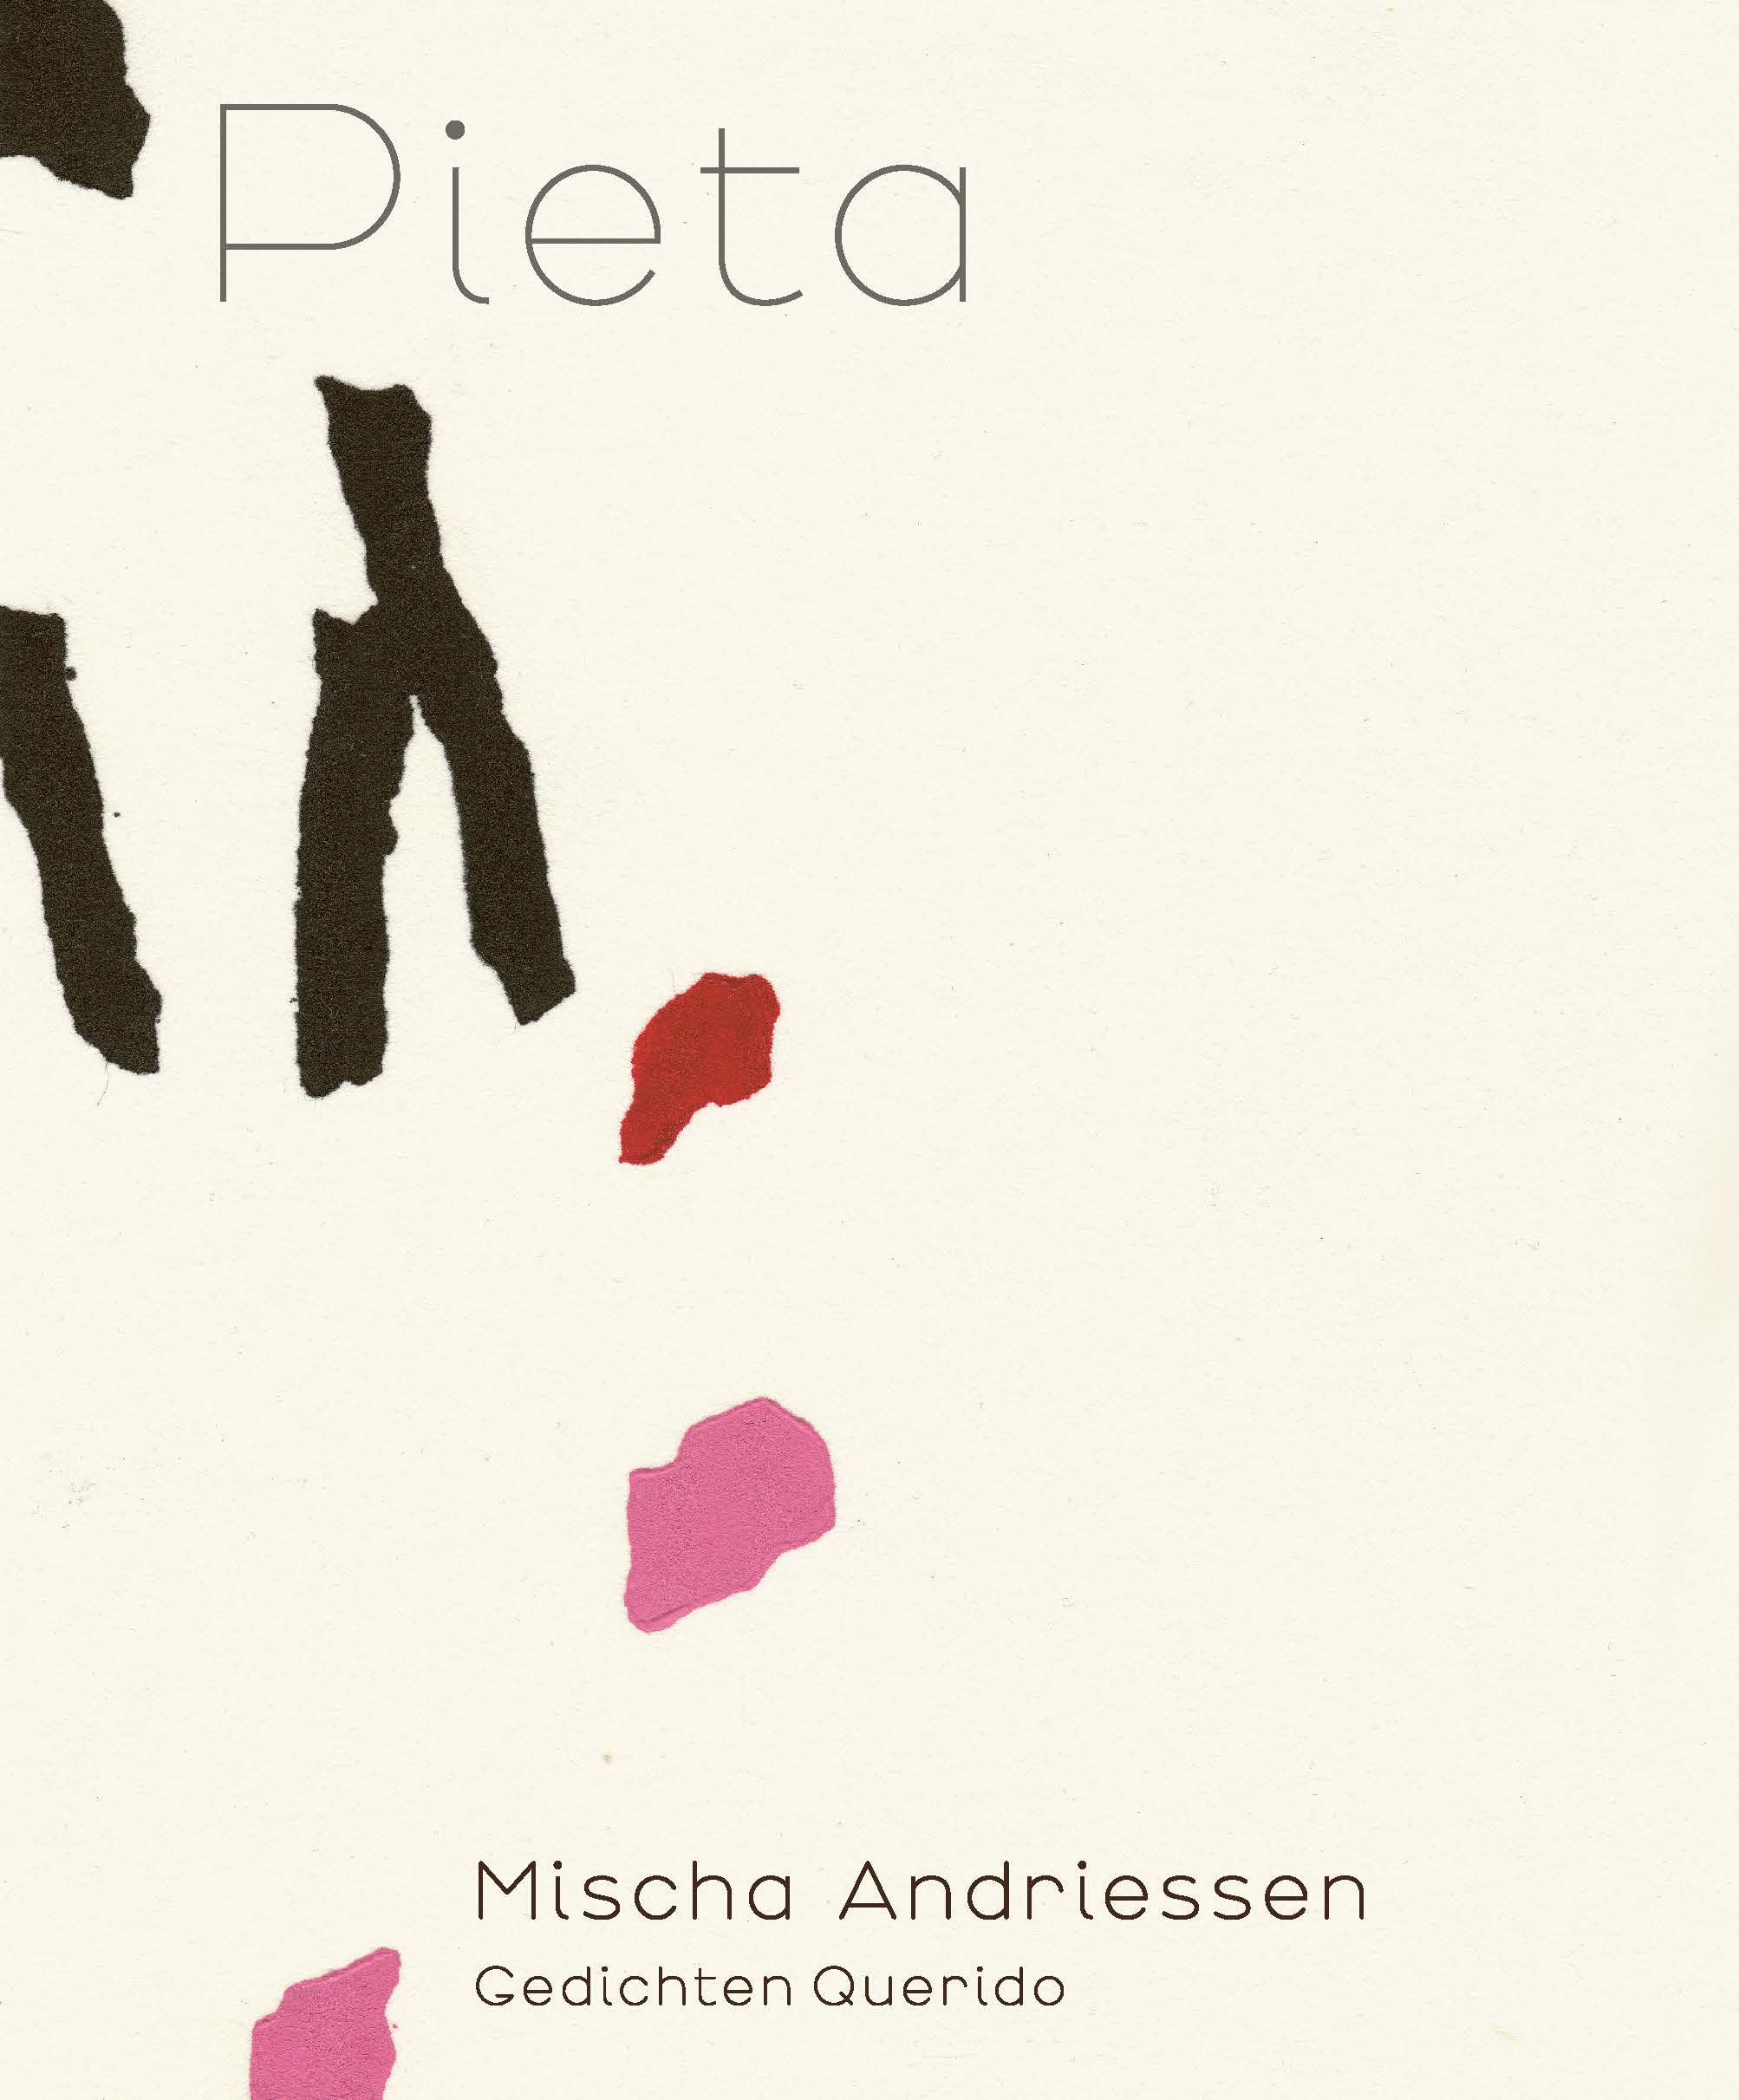 Mischa Andriessen - Pieta